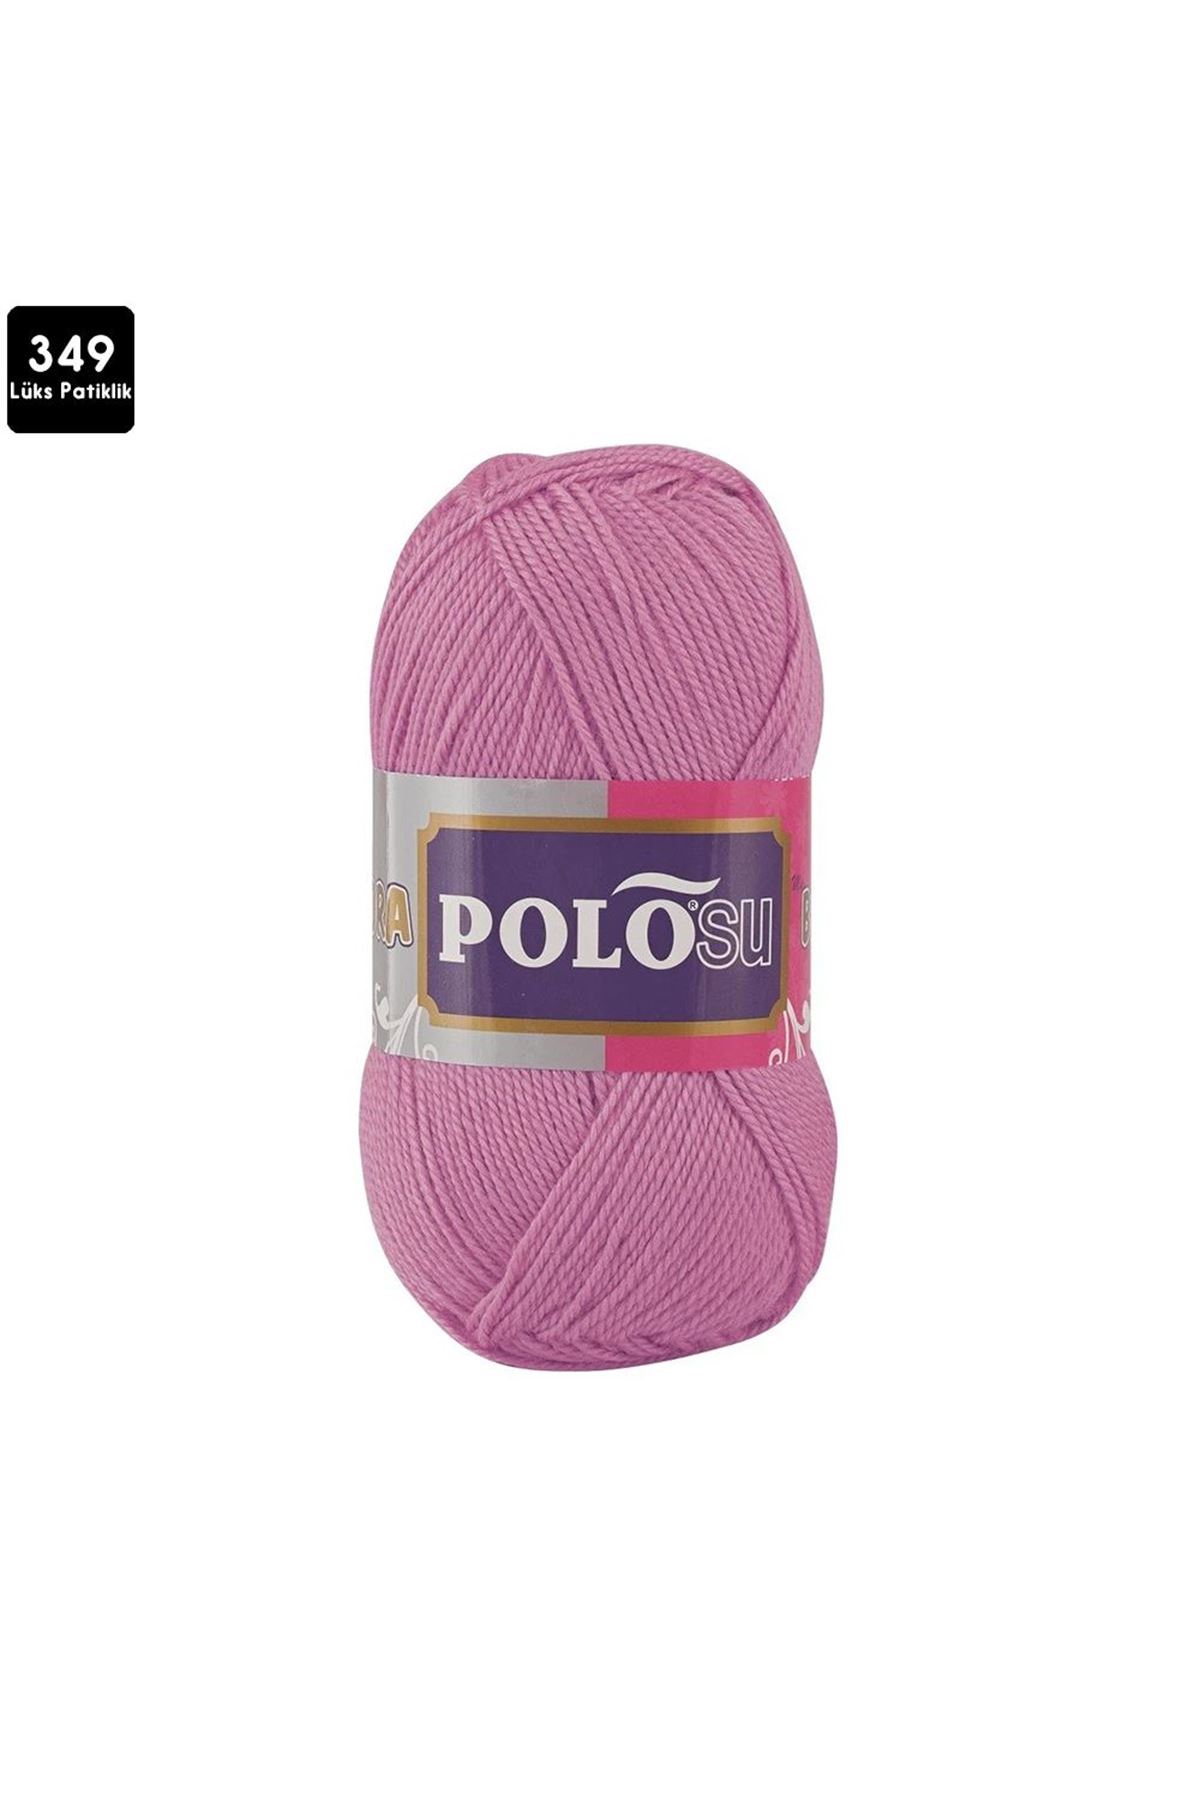 PoloSU Lüks Patiklik Renk No:349